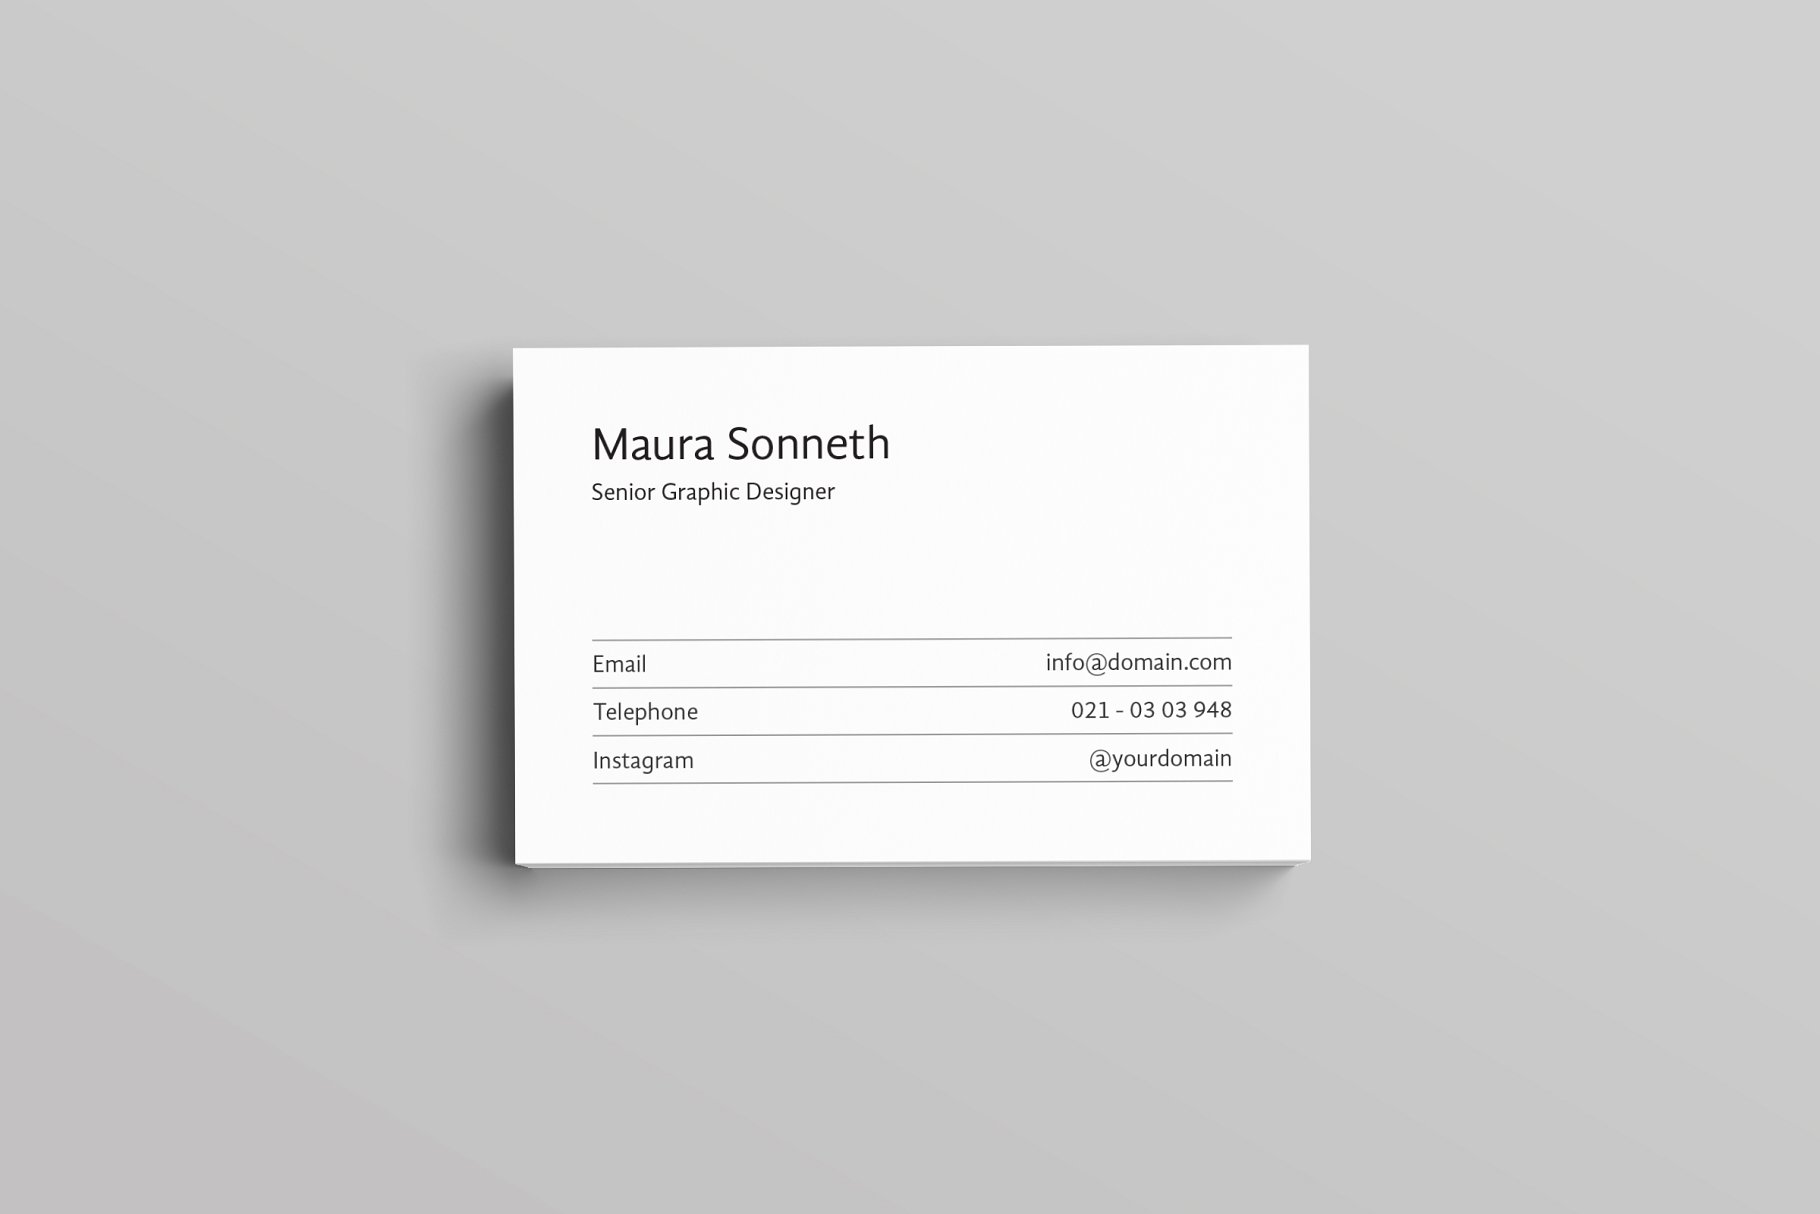 极简主义设计风格企业名片设计模板 Sonneth Business Card Template插图(2)